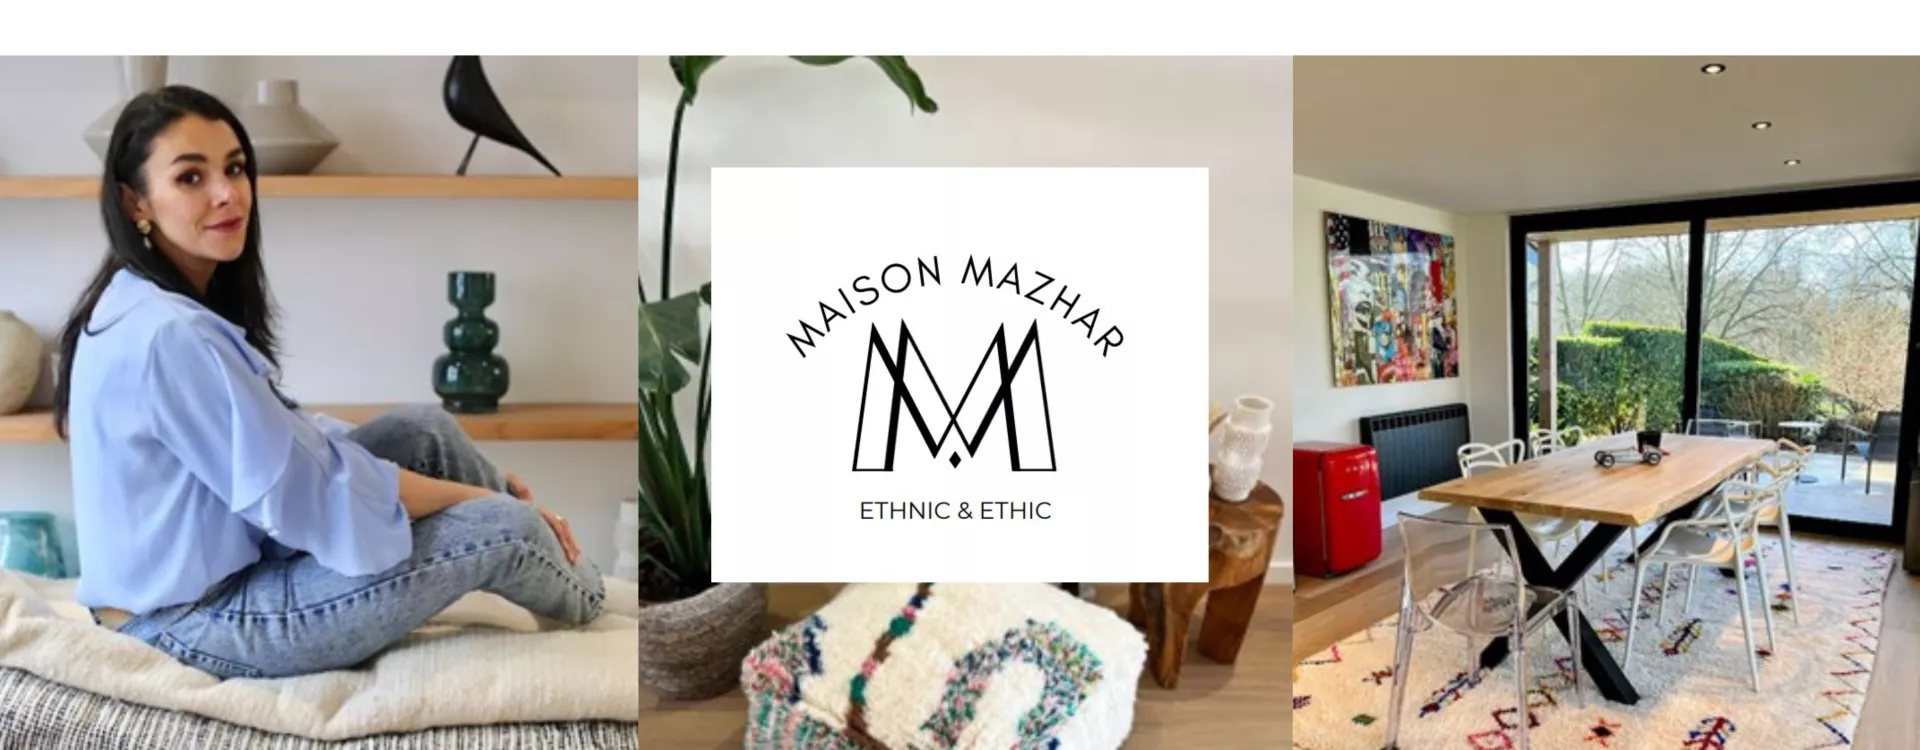 Maison Mazhar - Nadia - Dreams Lab - Pop Up Store